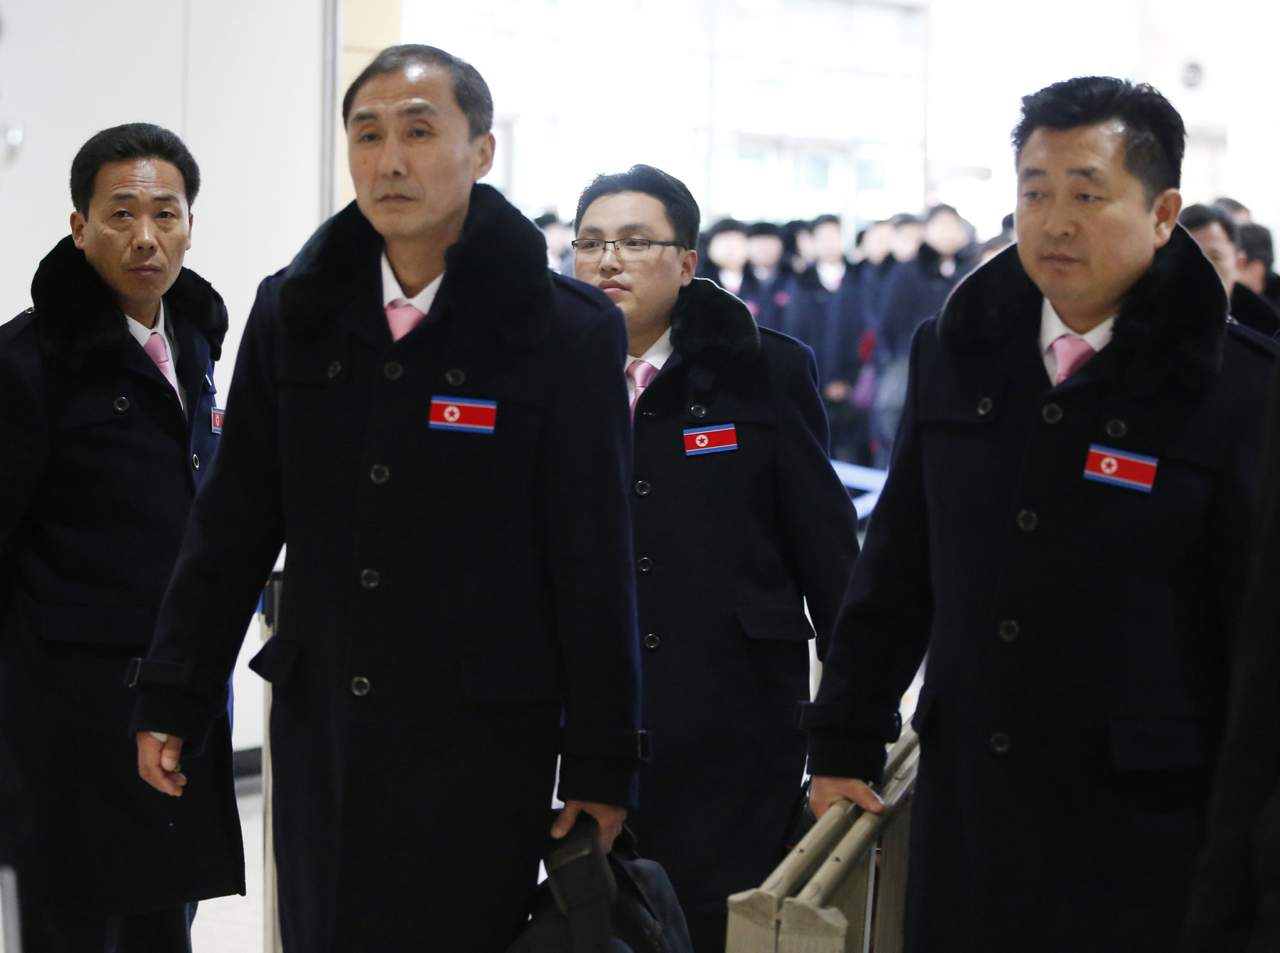 Delegación norcoreana regresa a su país tras expresar voluntad de diálogo. Noticias en tiempo real